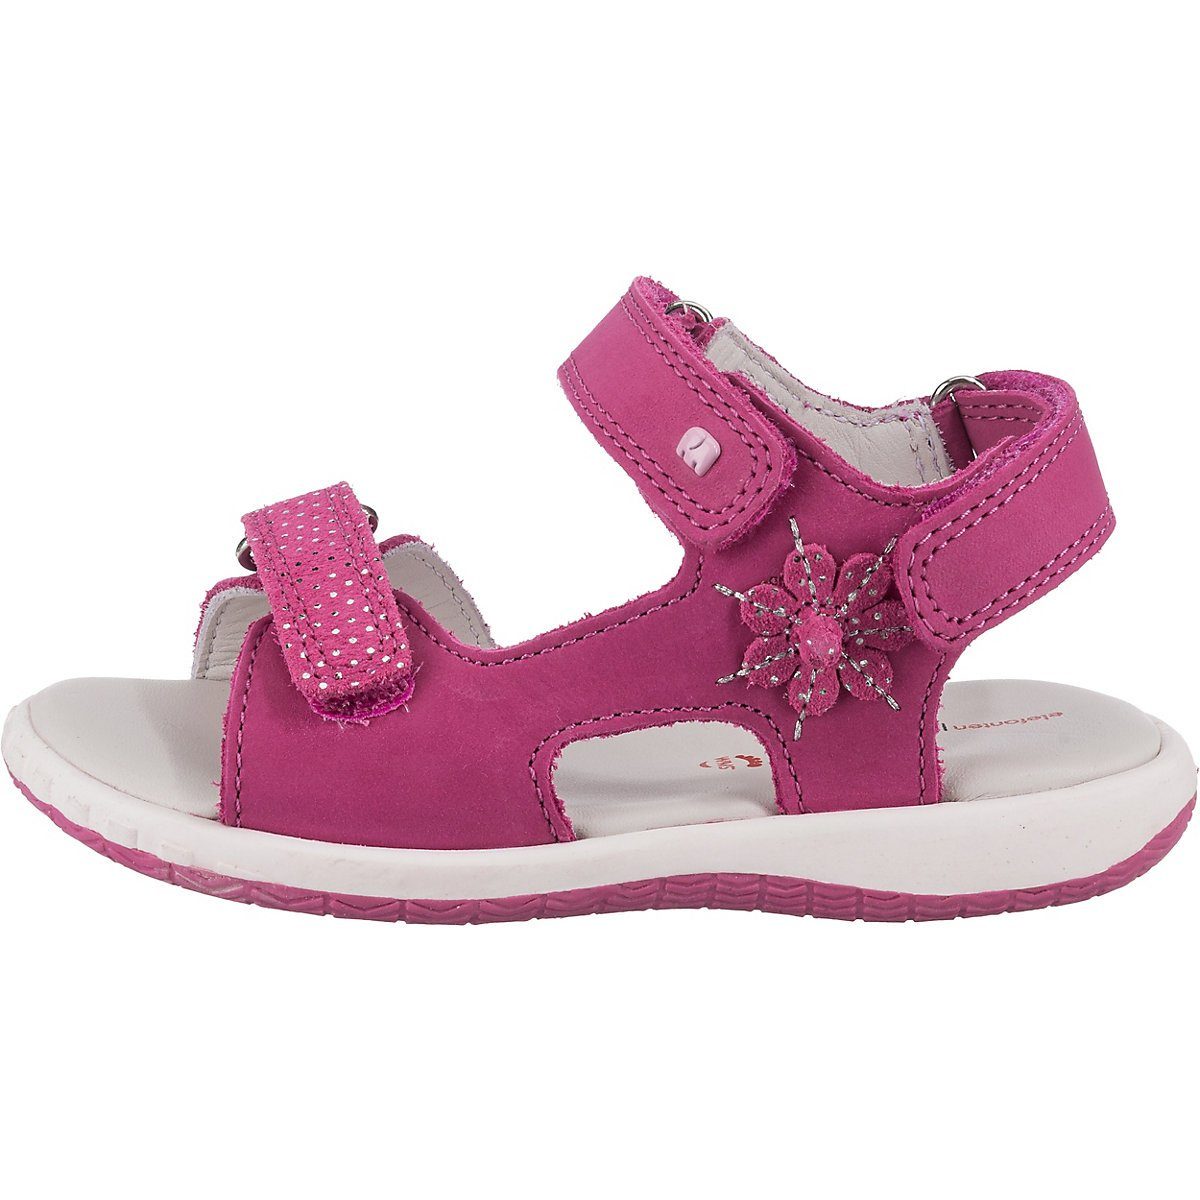 Schuhe Babyschuhe Mädchen ELEFANTEN Baby Sandalen NIKKI für Mädchen Sandale